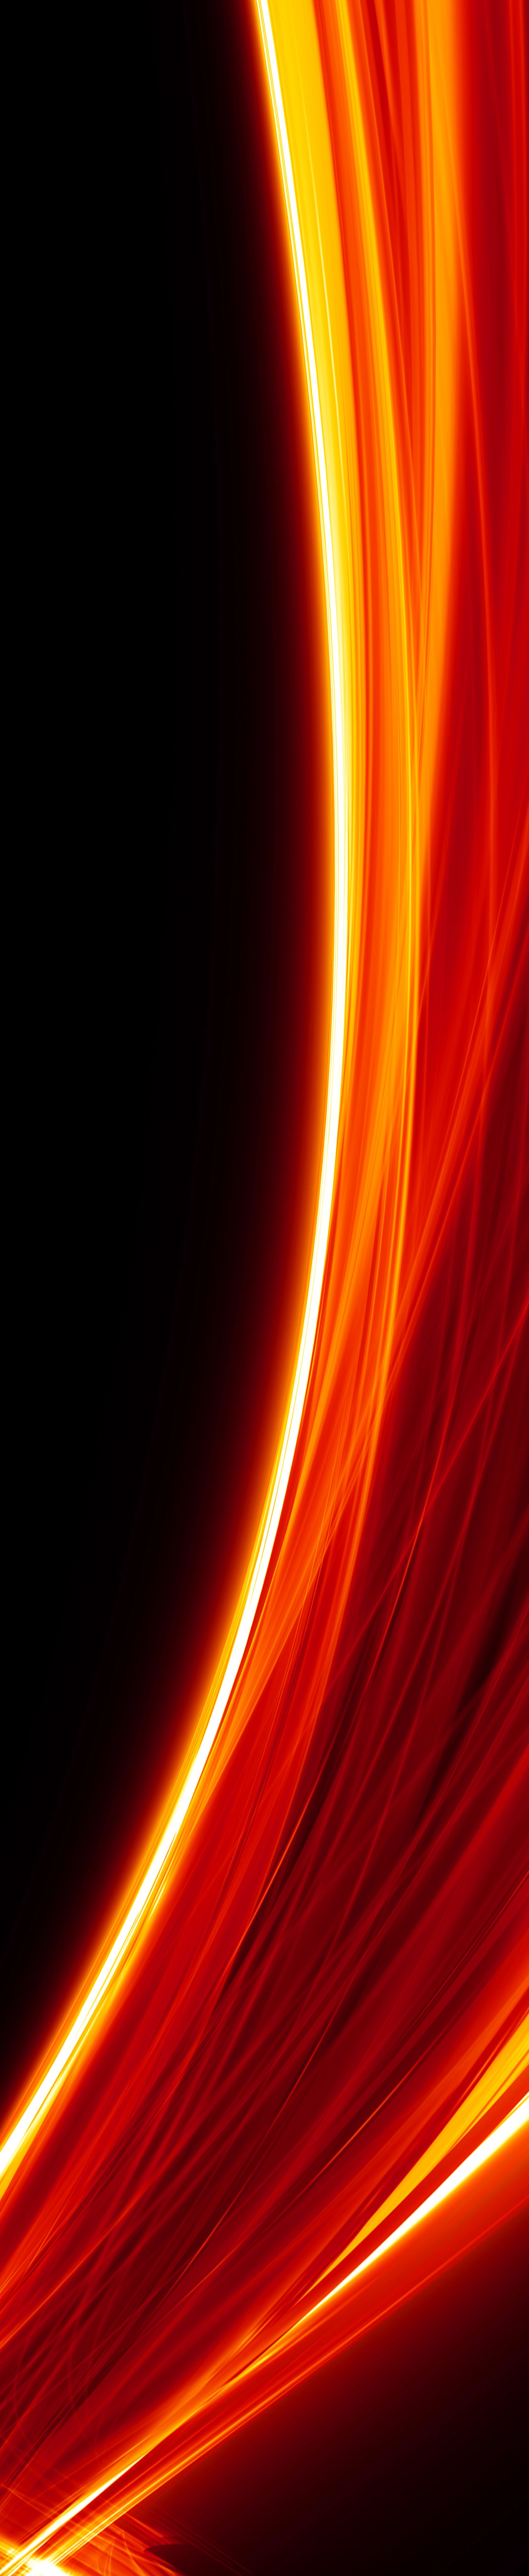 Photo de fond noir avec faisceaux lumineux rouges, orange et blanches